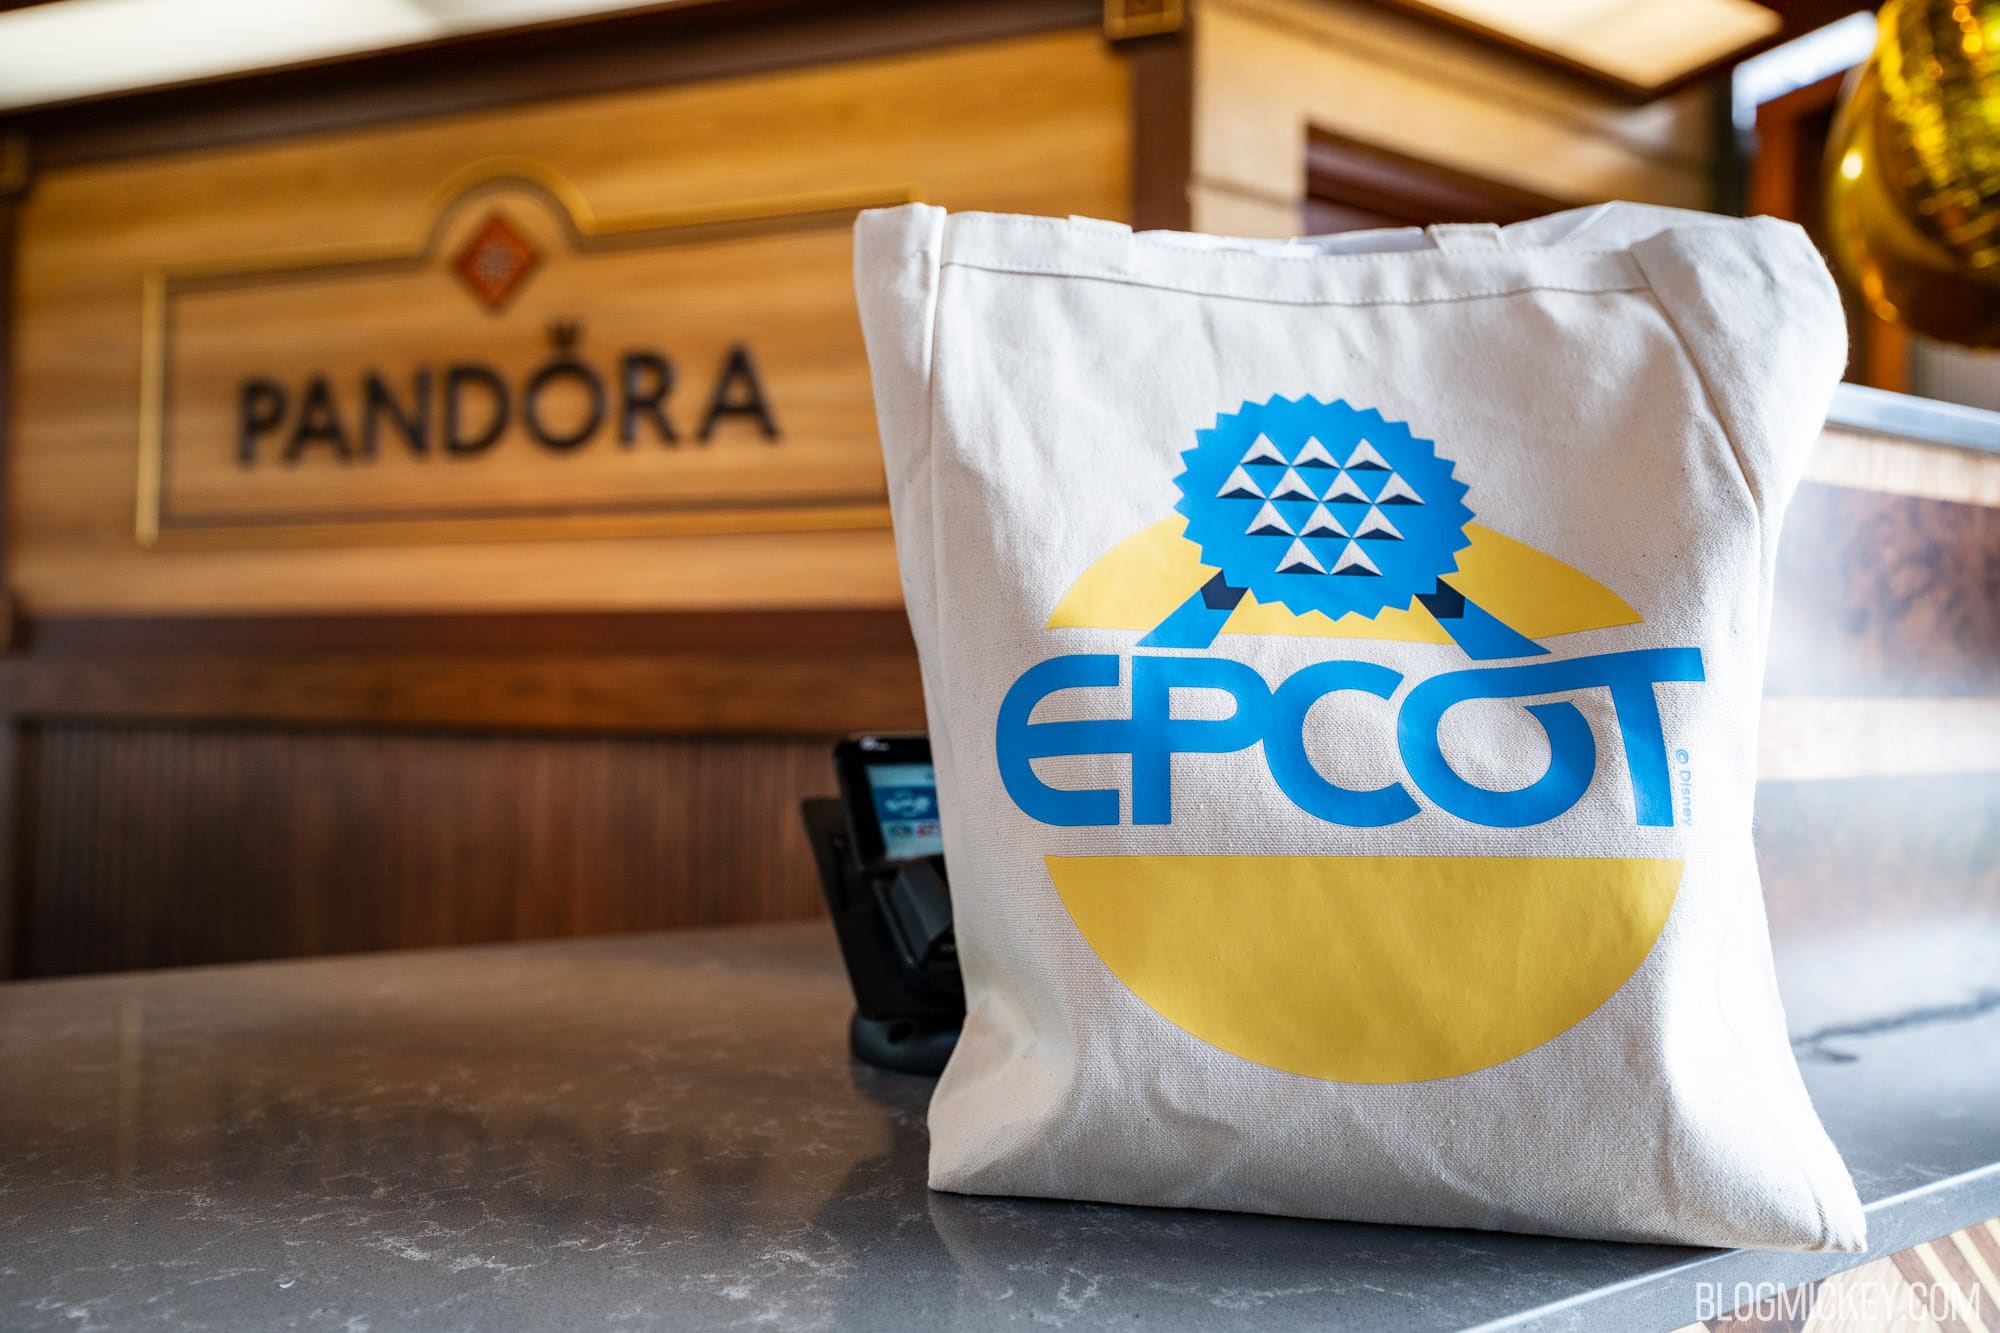 1700593255 63 Local dedicado a joalheria Pandora agora oficialmente aberto no EPCOT